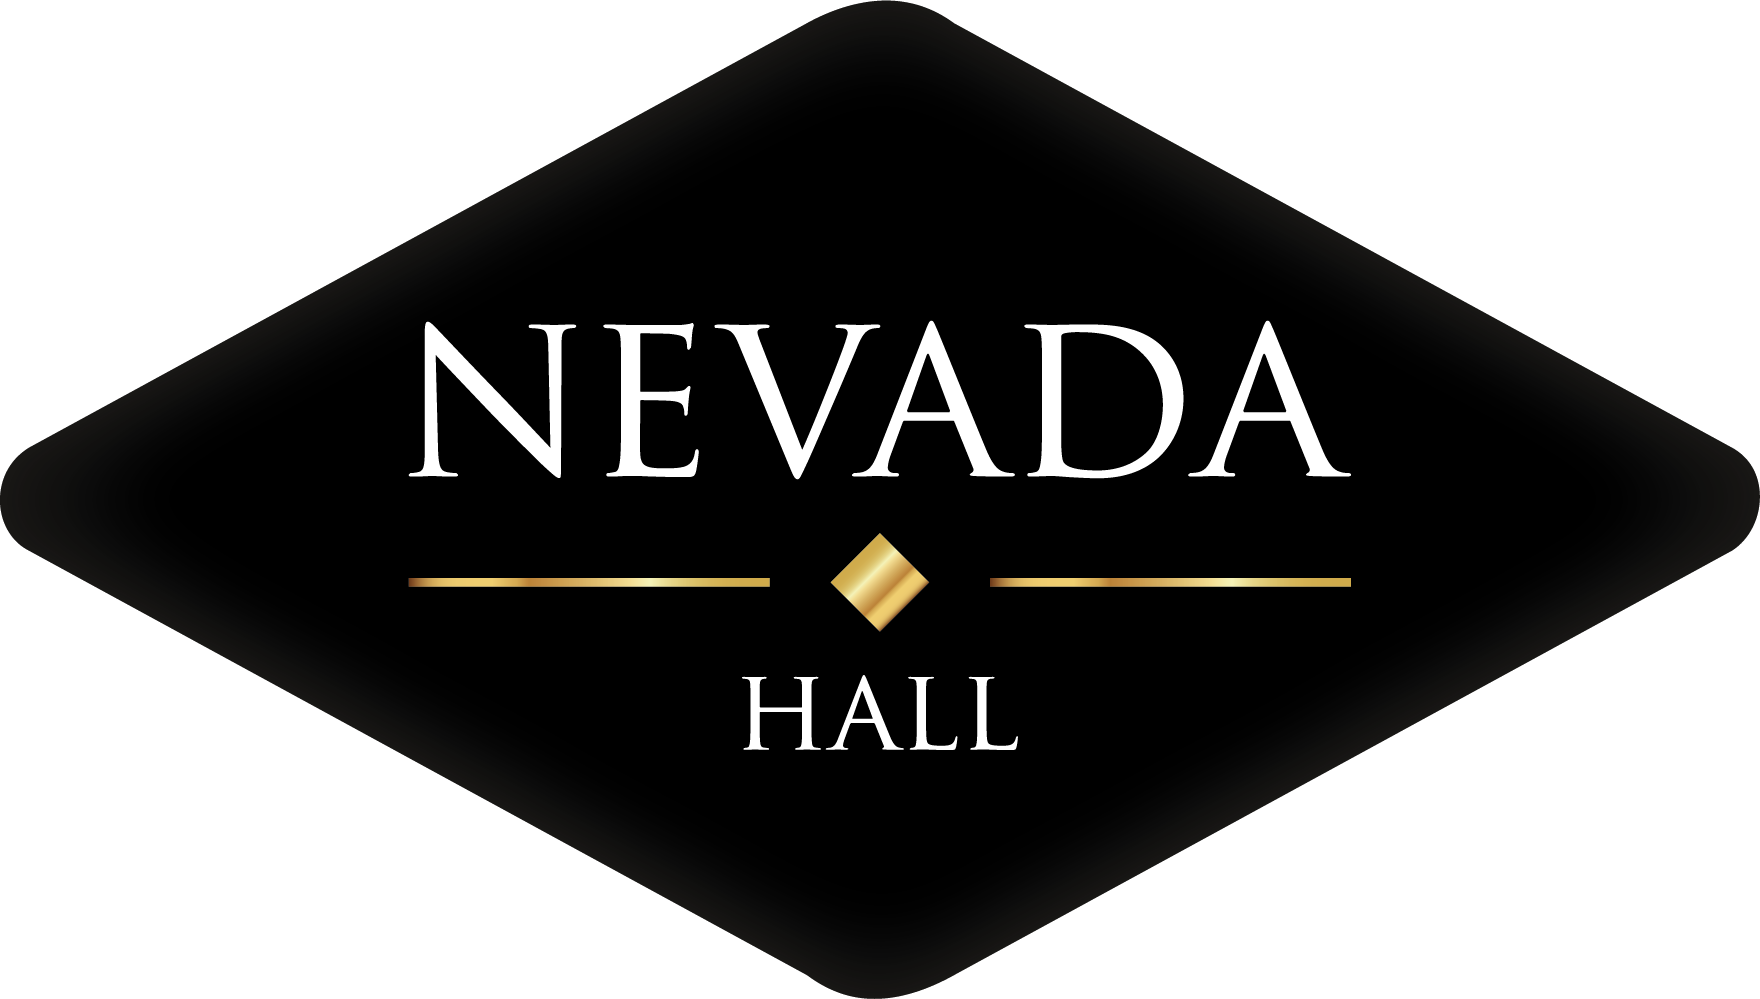 Nevada Hall logo